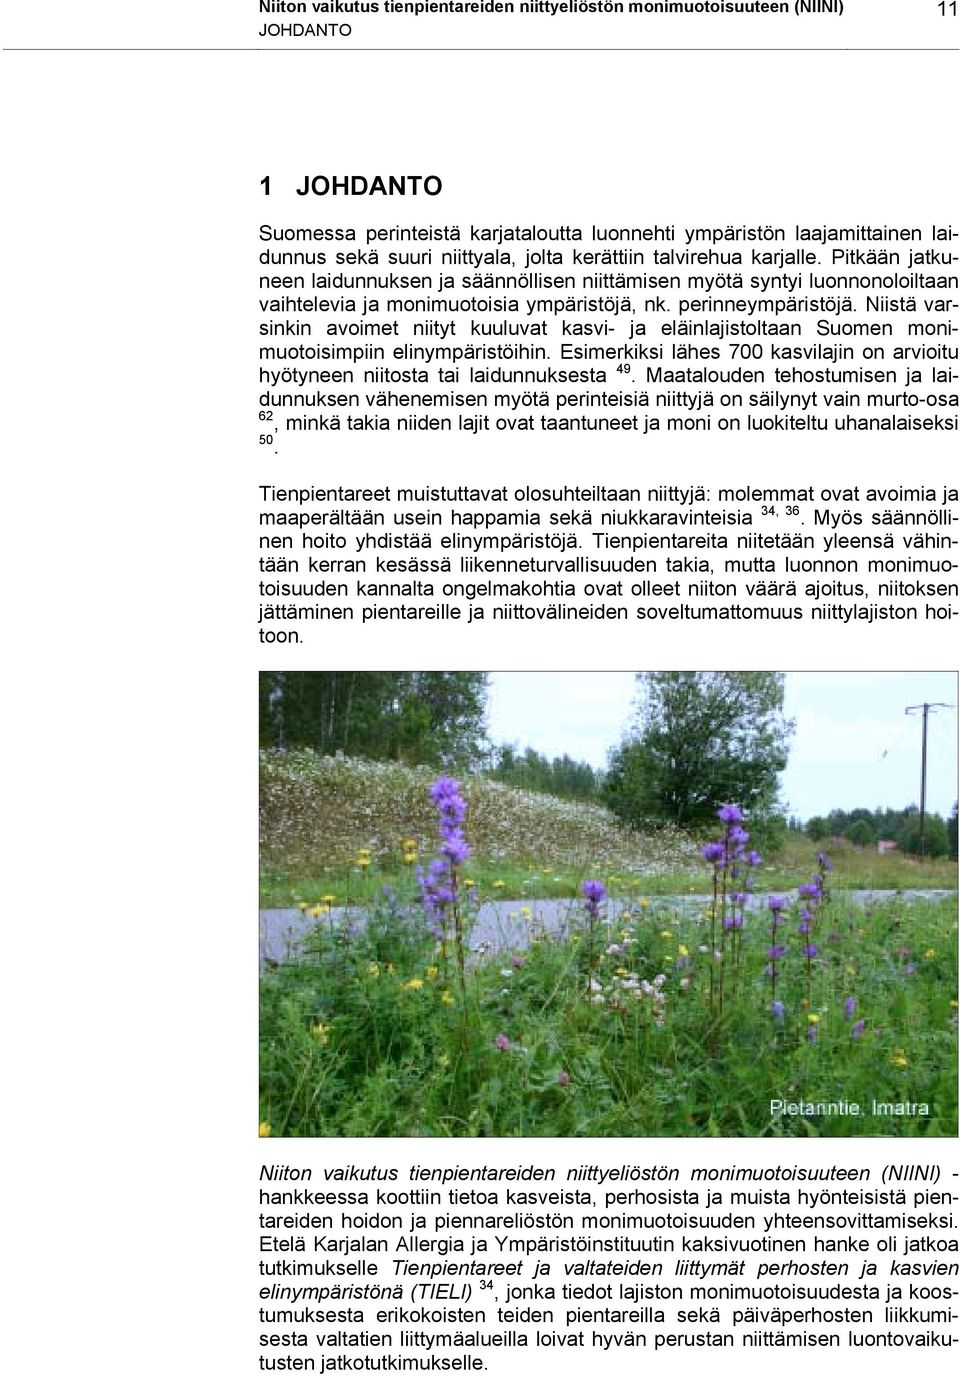 Niistä varsinkin avoimet niityt kuuluvat kasvi- ja eläinlajistoltaan Suomen monimuotoisimpiin elinympäristöihin. Esimerkiksi lähes 700 kasvilajin on arvioitu hyötyneen niitosta tai laidunnuksesta 49.